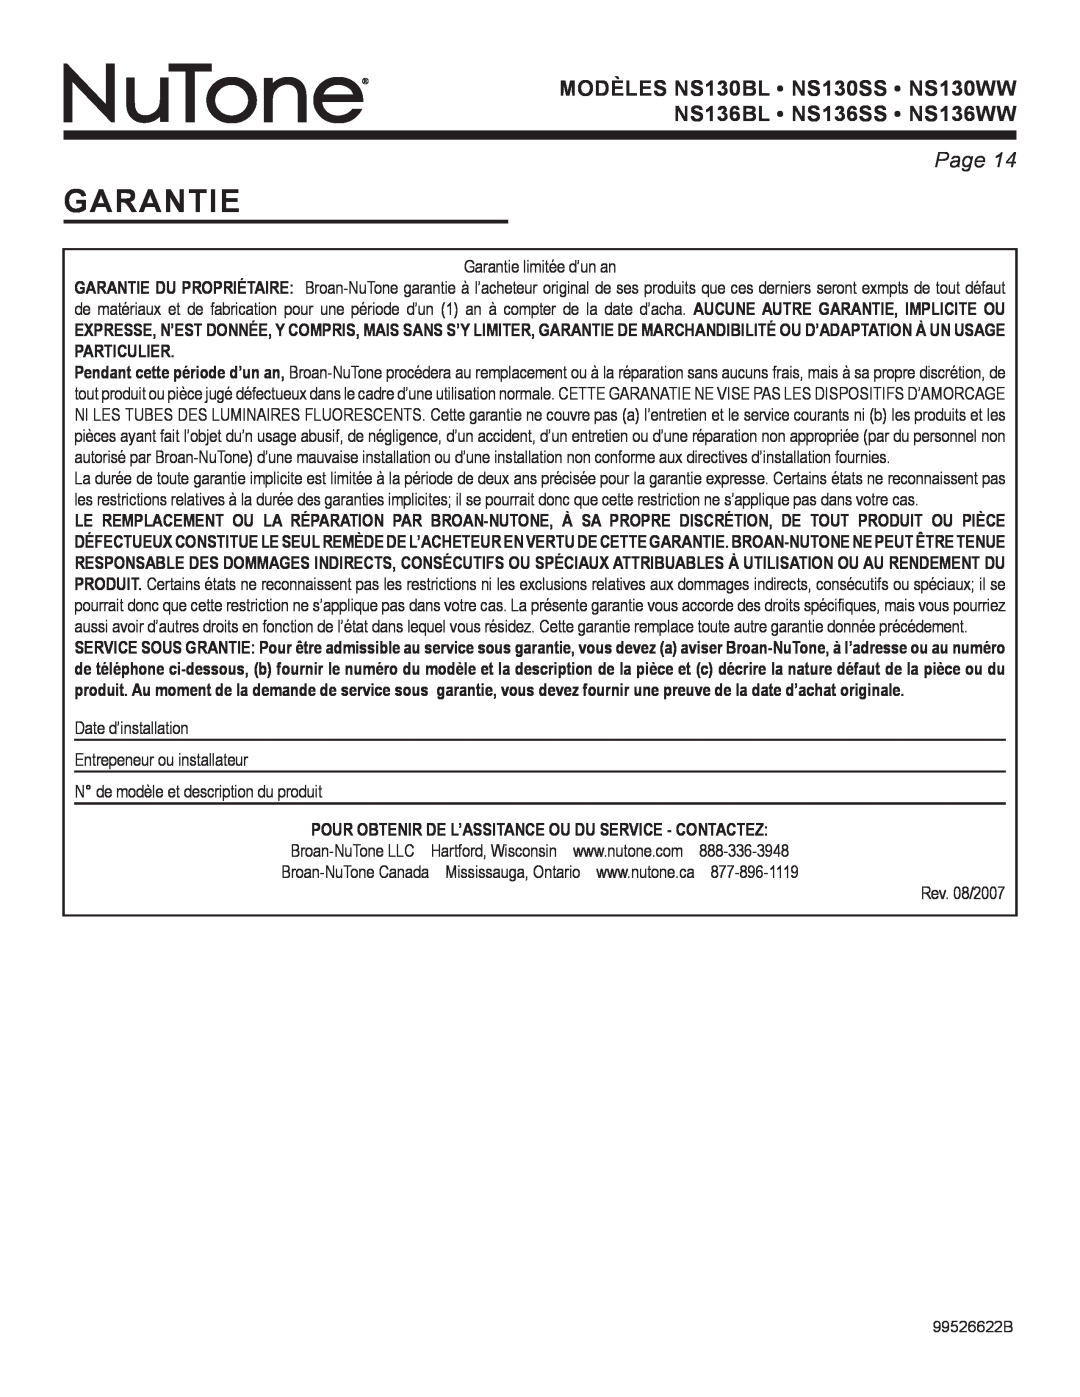 NuTone NS Series manual Garantie limitée d’un an, Date d’installation Entrepeneur ou installateur, Page, Rev. 08/2007 